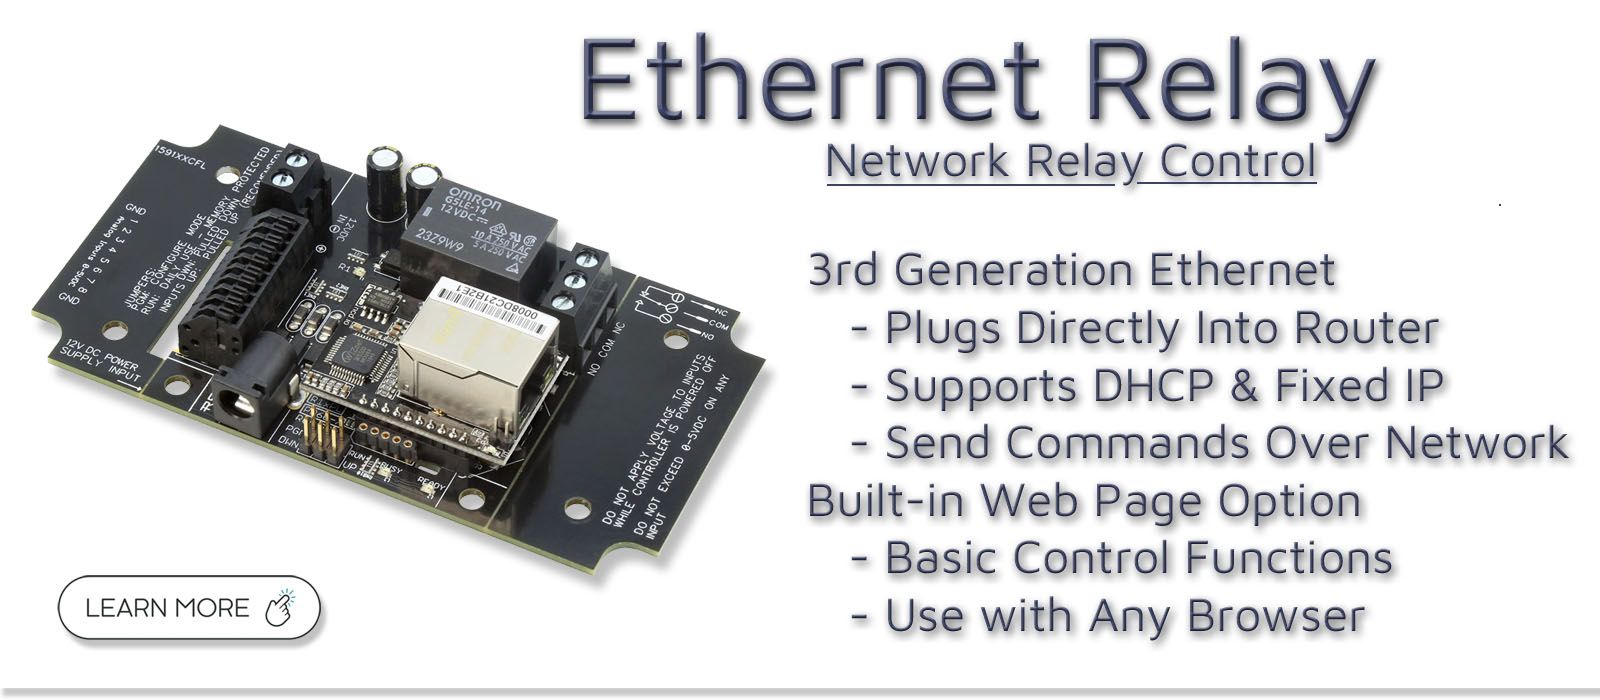 Ethernet Relay